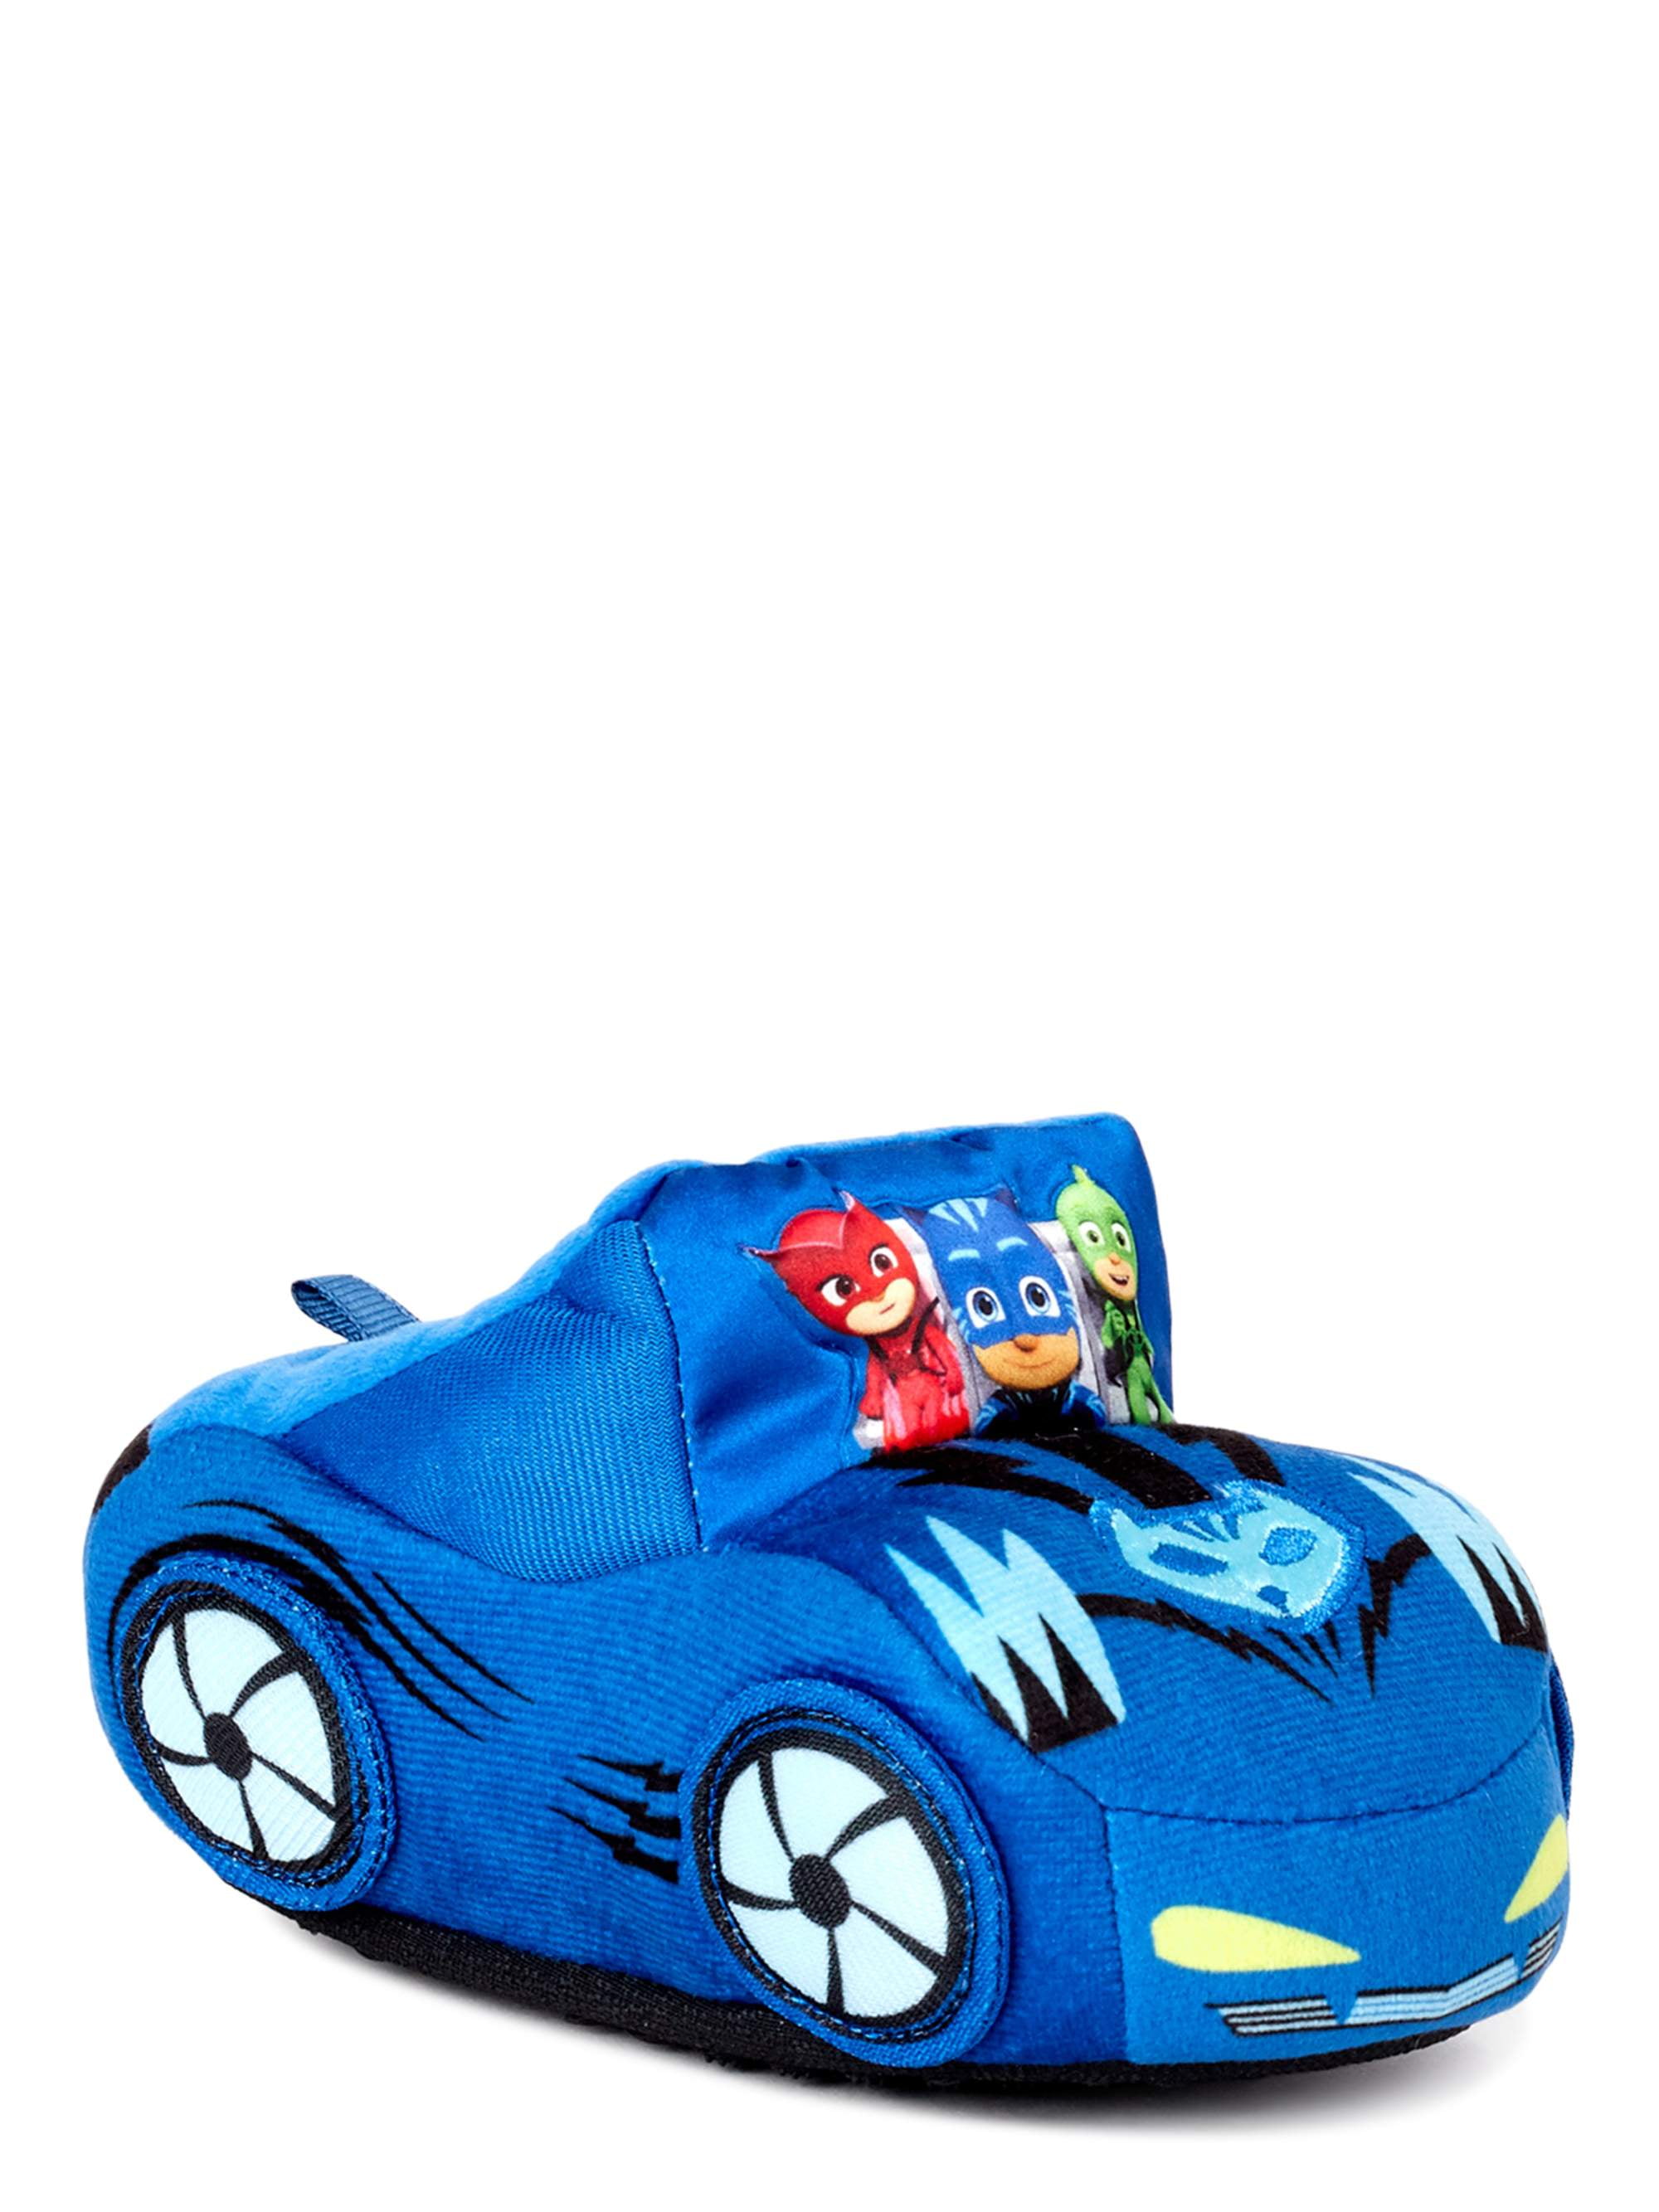 Details about   PJ Masks Slippers Catboy Gekko Socktop Slip On Slipper Toddler Boys Girls Gift 